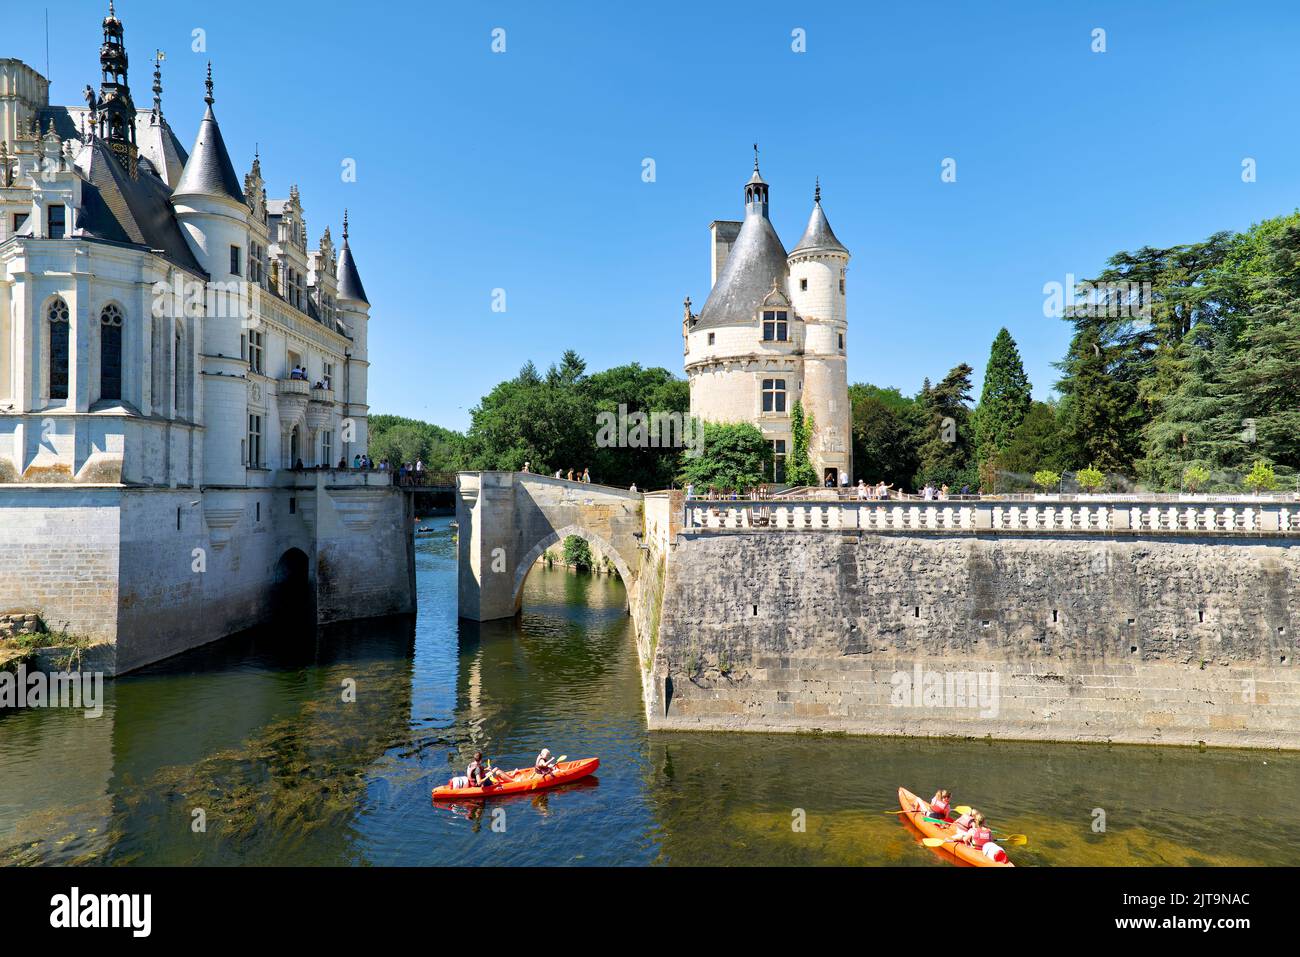 Chateau de Chenonceau. France. Stock Photo